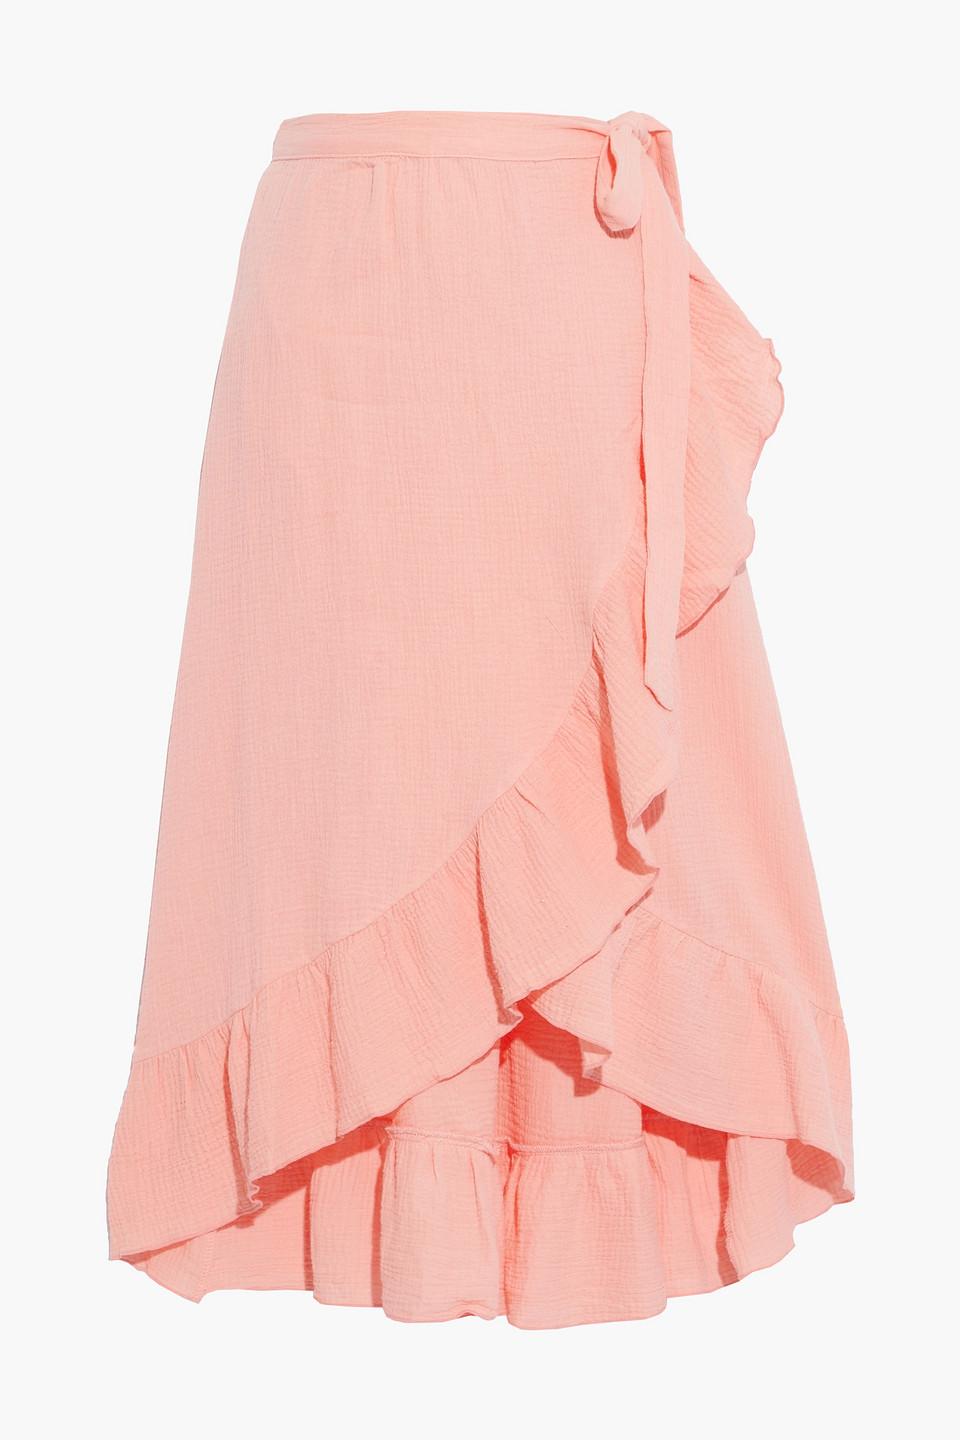 Eberjey Nomad roxanna wickelrock aus baumwolle in knitteroptik mit rüschen  in Pink | Lyst DE